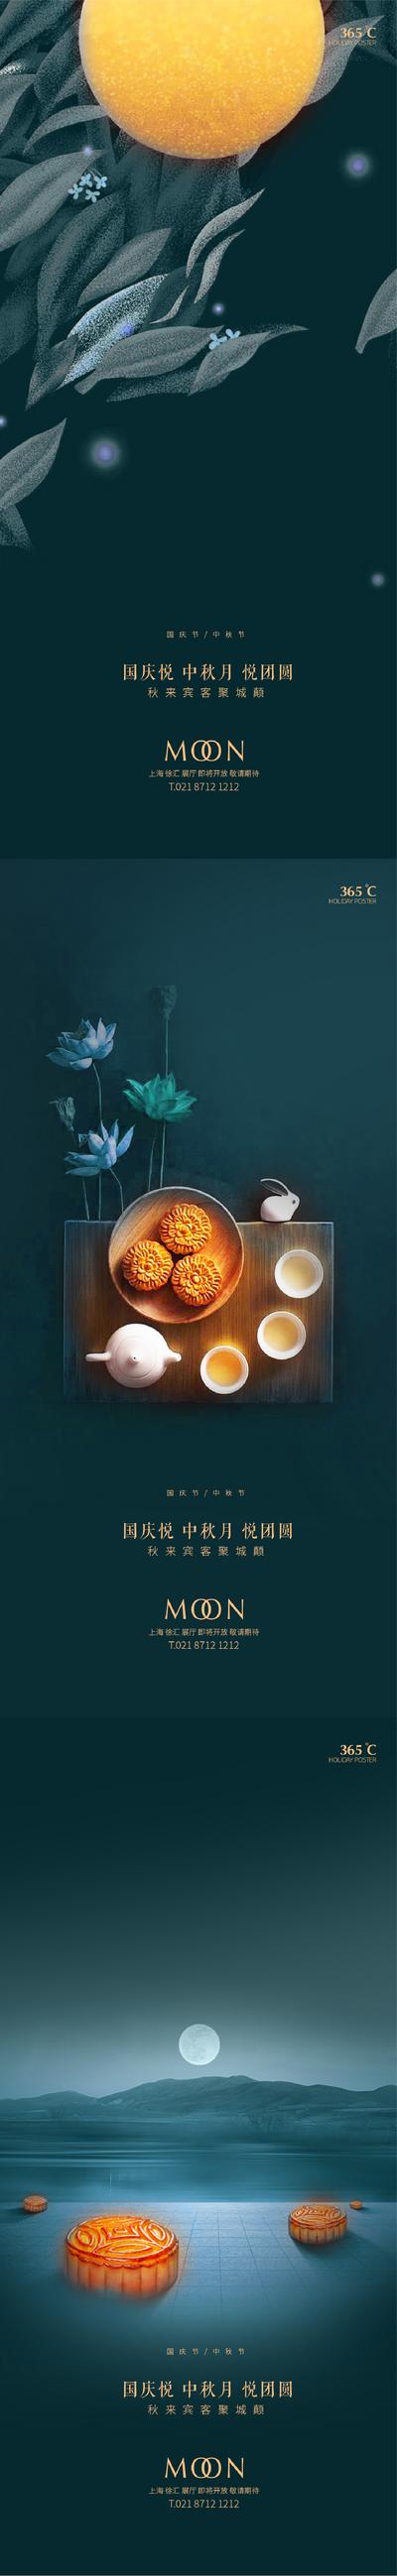 南门网 海报 中国传统节日 公历节日 中秋节 国庆 月亮 月饼 系列